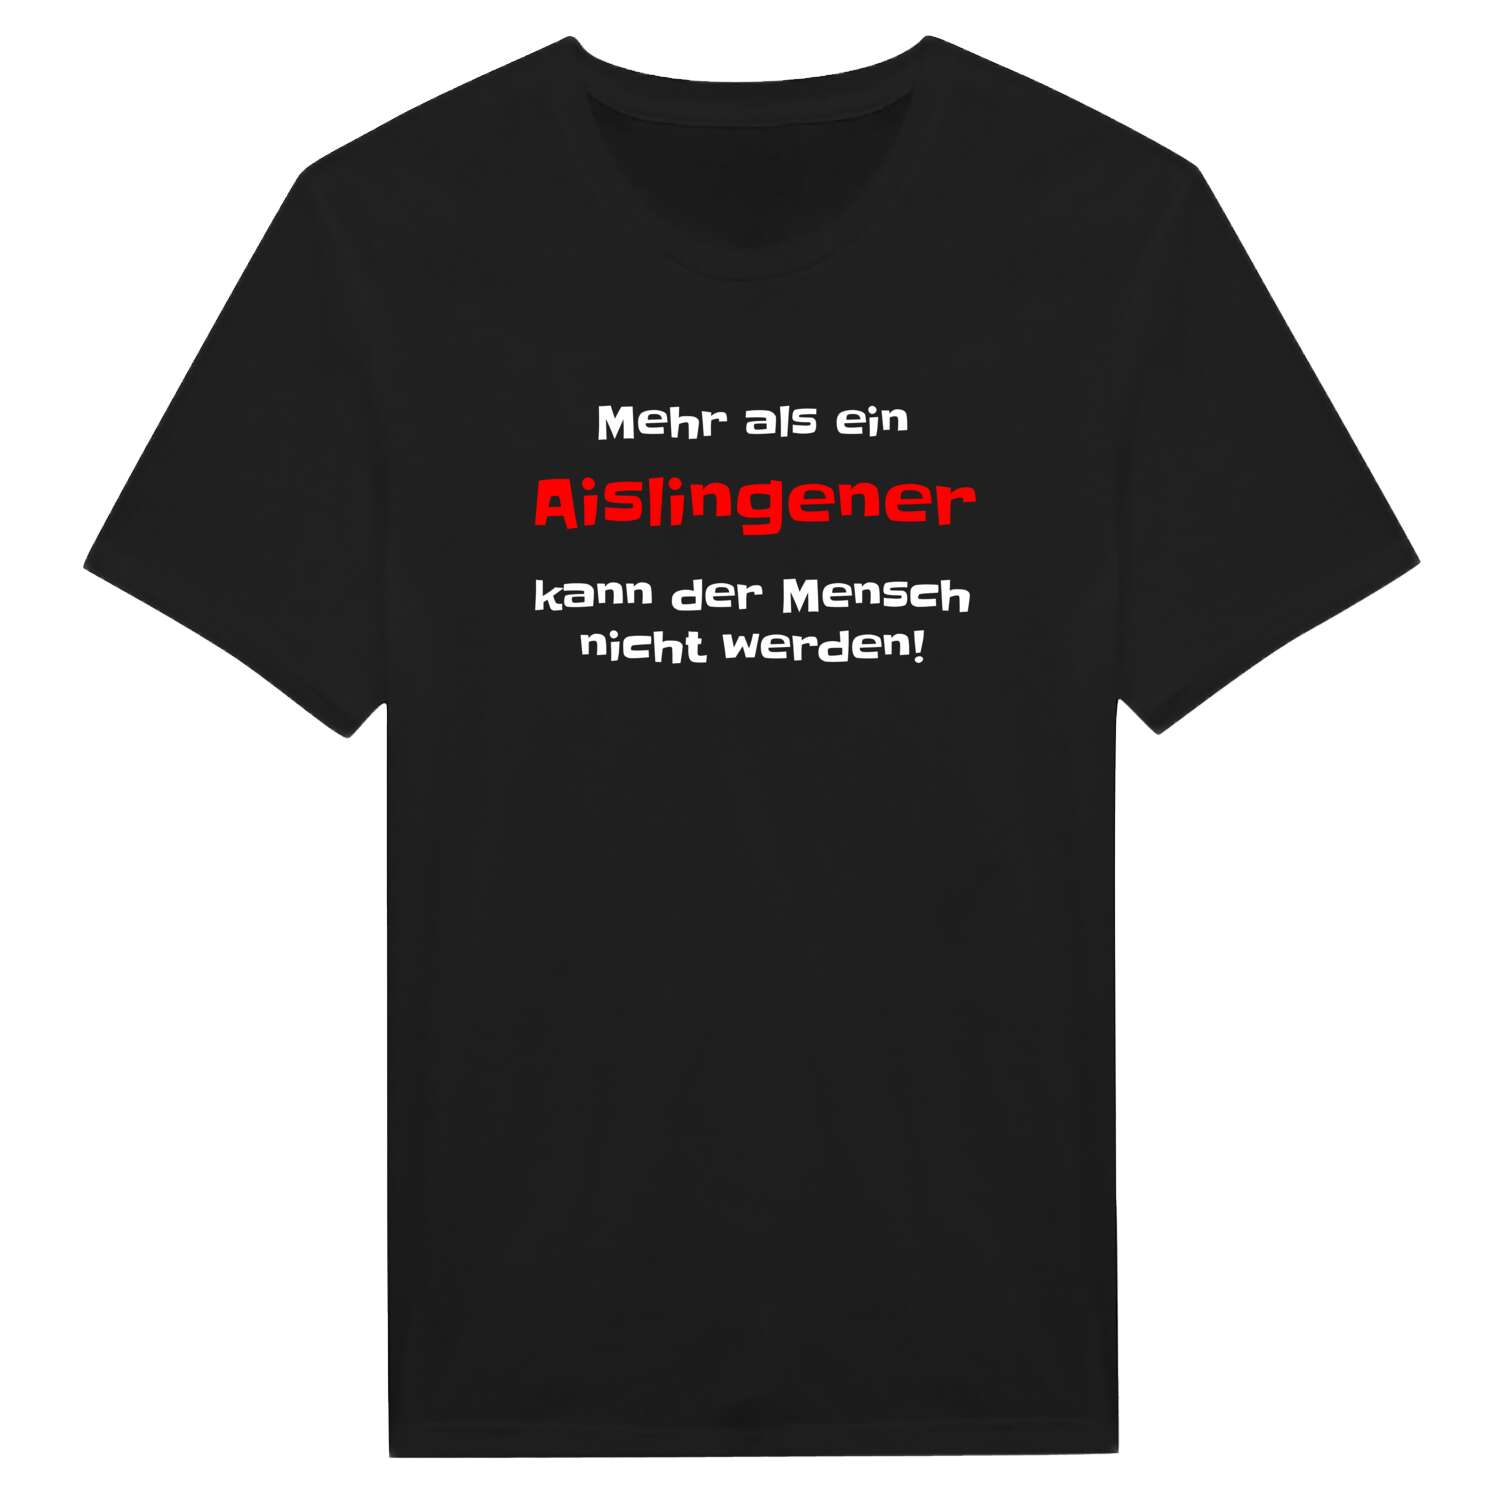 Aislingen T-Shirt »Mehr als ein«